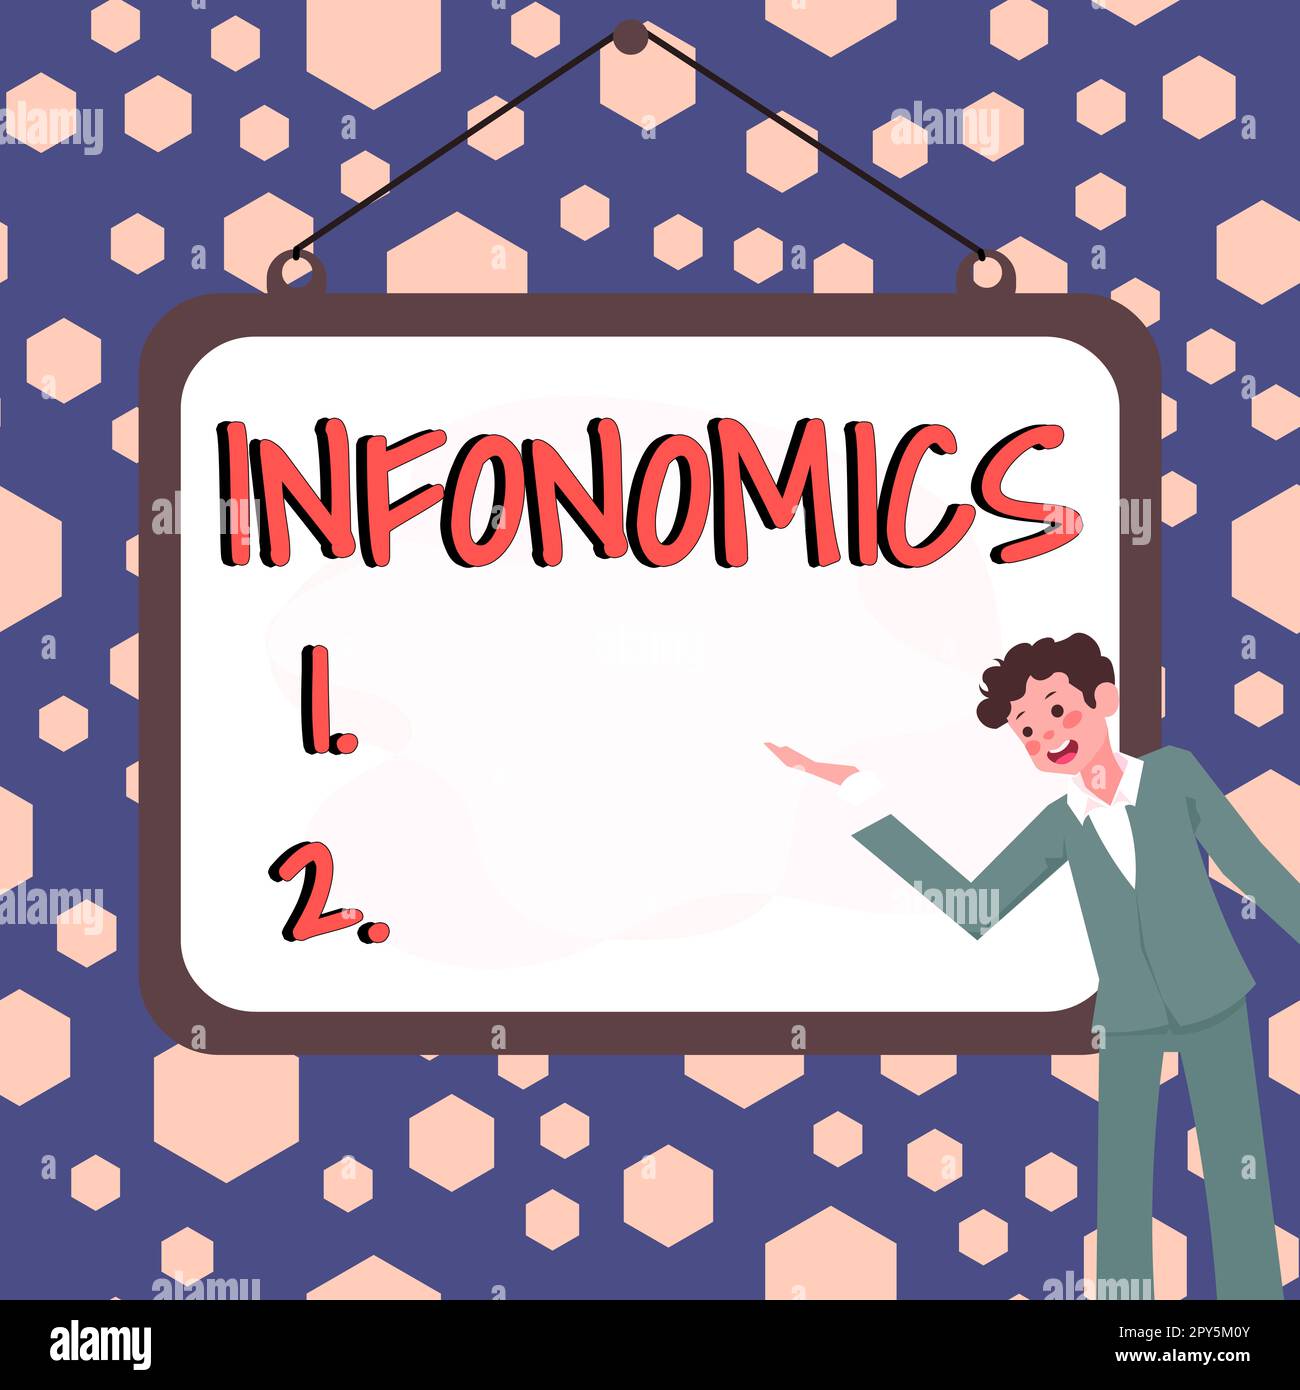 Signo de escritura a mano Infonomics. Visión general del negocio Imagen visual utilizada para representar información o datos Foto de stock